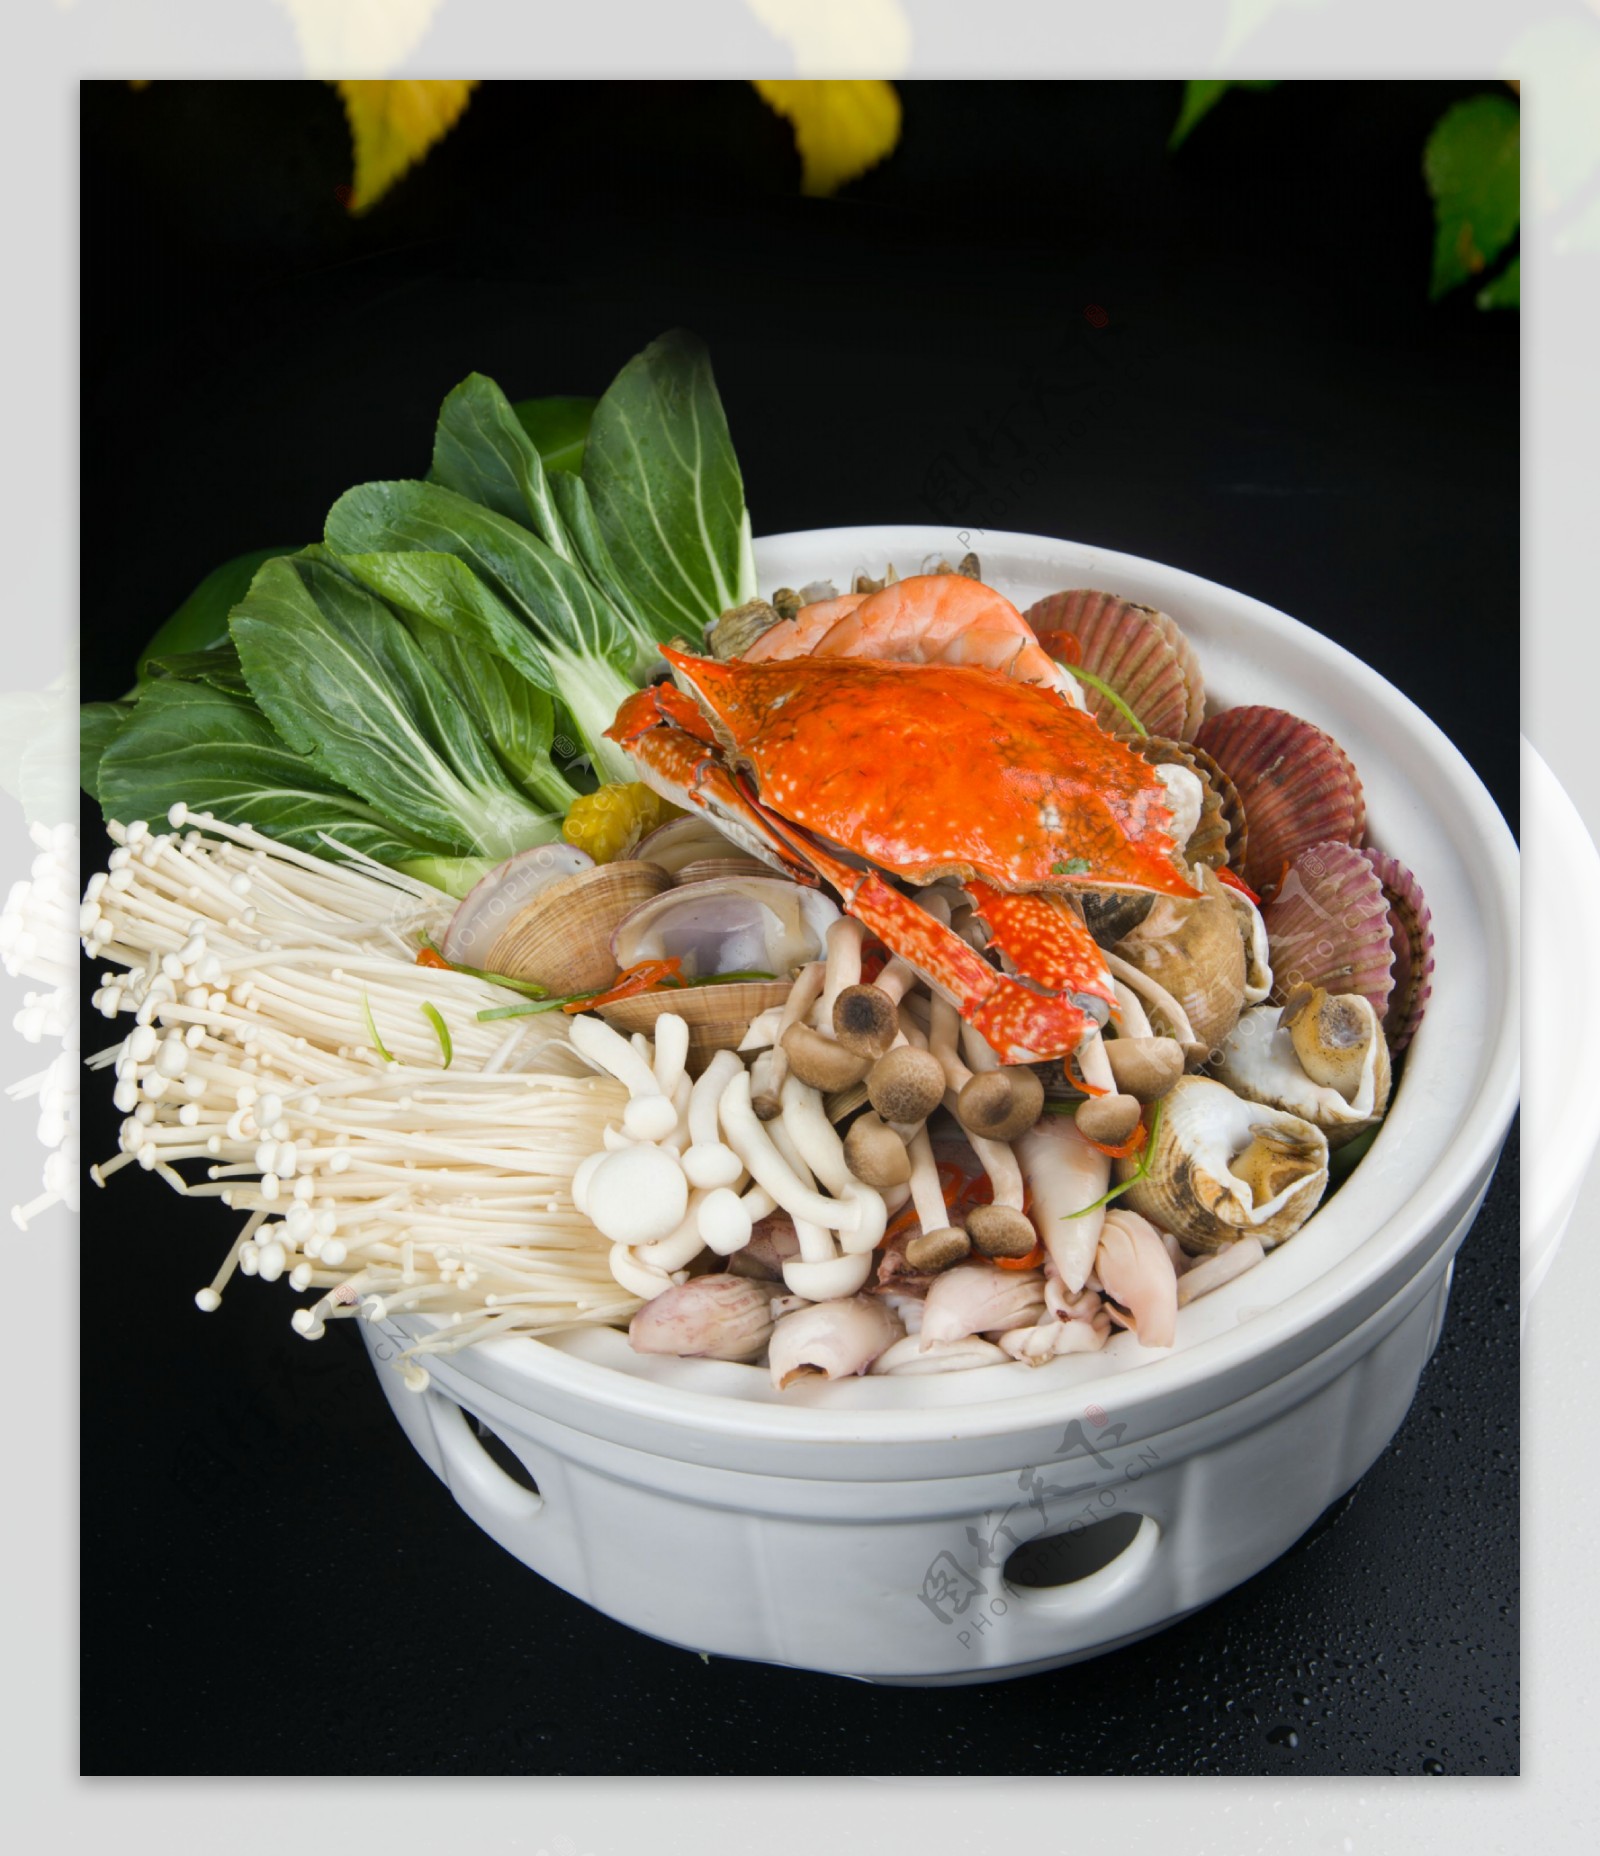 海鲜捞锅图片